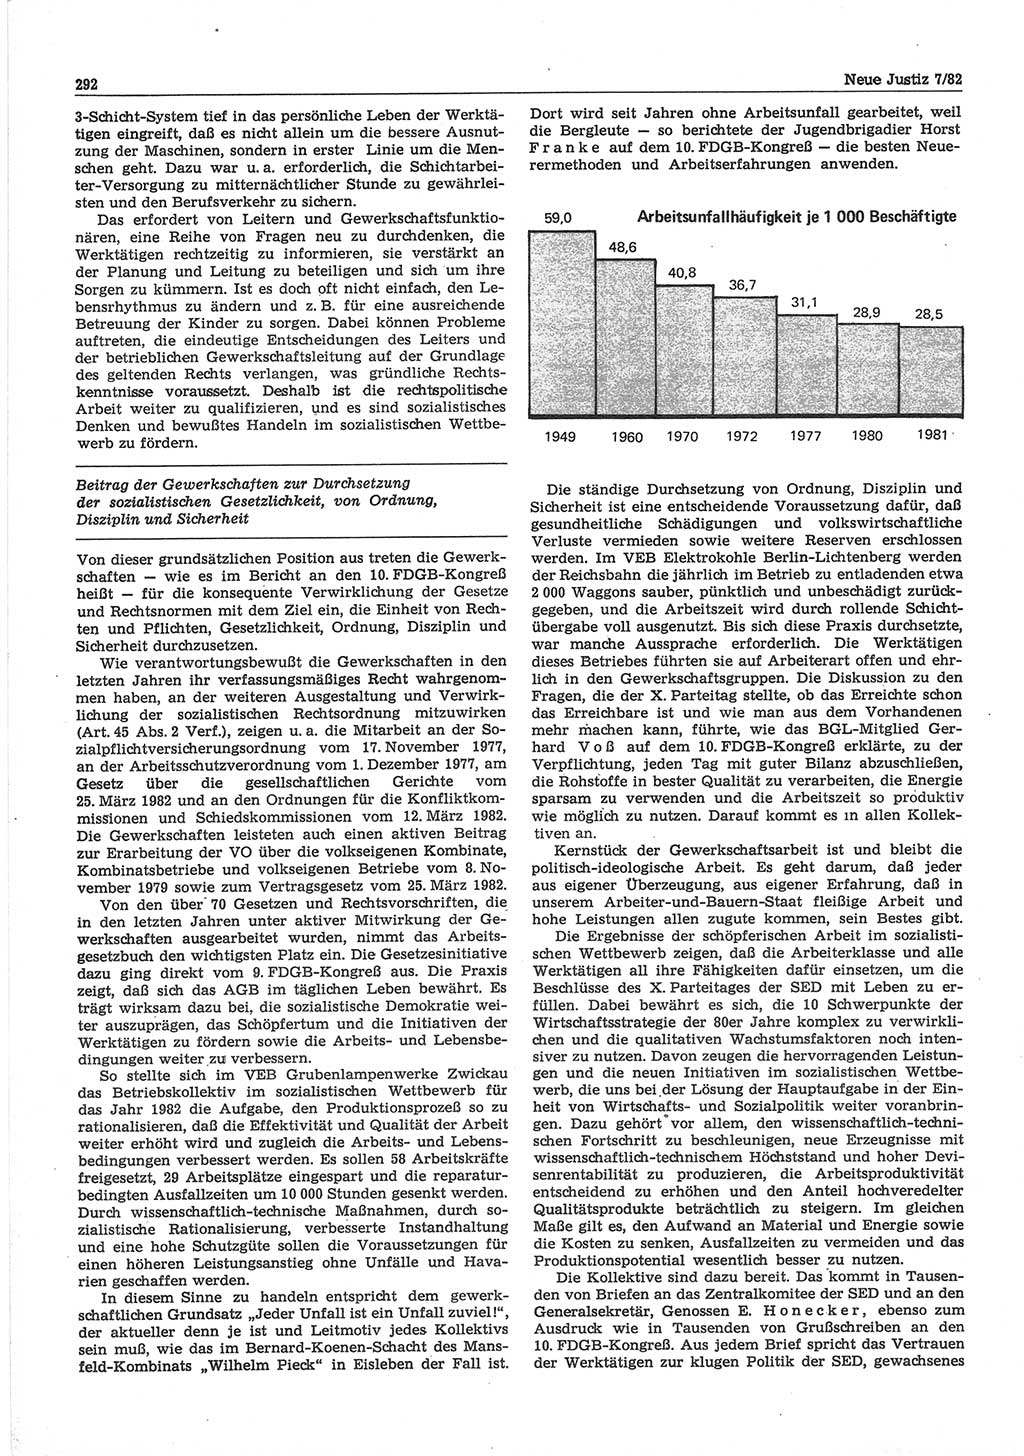 Neue Justiz (NJ), Zeitschrift für sozialistisches Recht und Gesetzlichkeit [Deutsche Demokratische Republik (DDR)], 36. Jahrgang 1982, Seite 292 (NJ DDR 1982, S. 292)